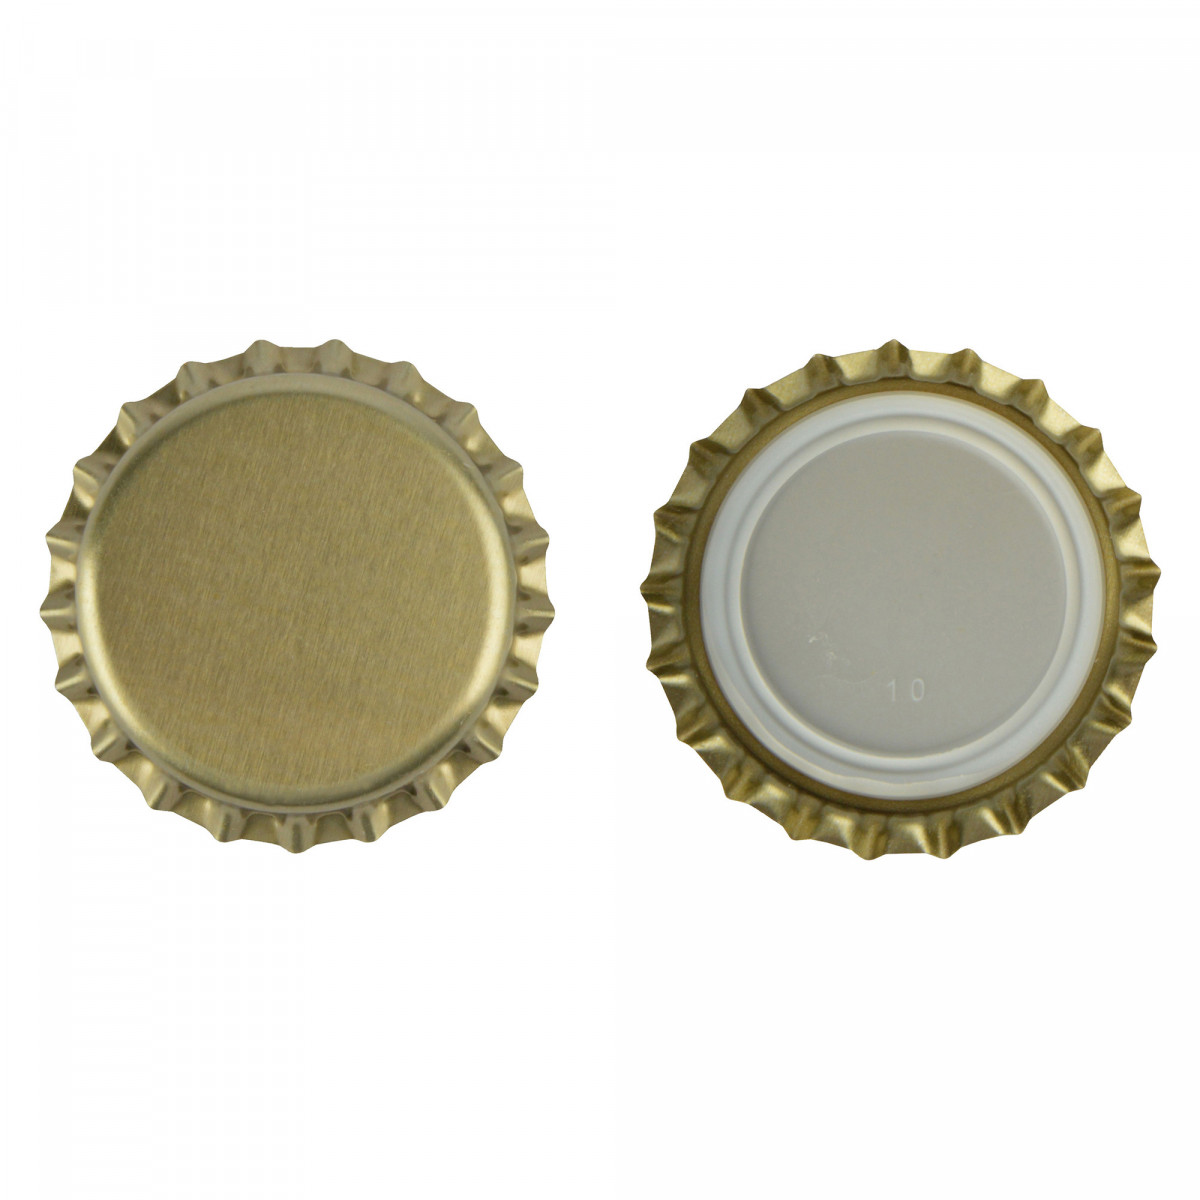 Kronkorken 29 mm gold - 100 St. • Brouwland